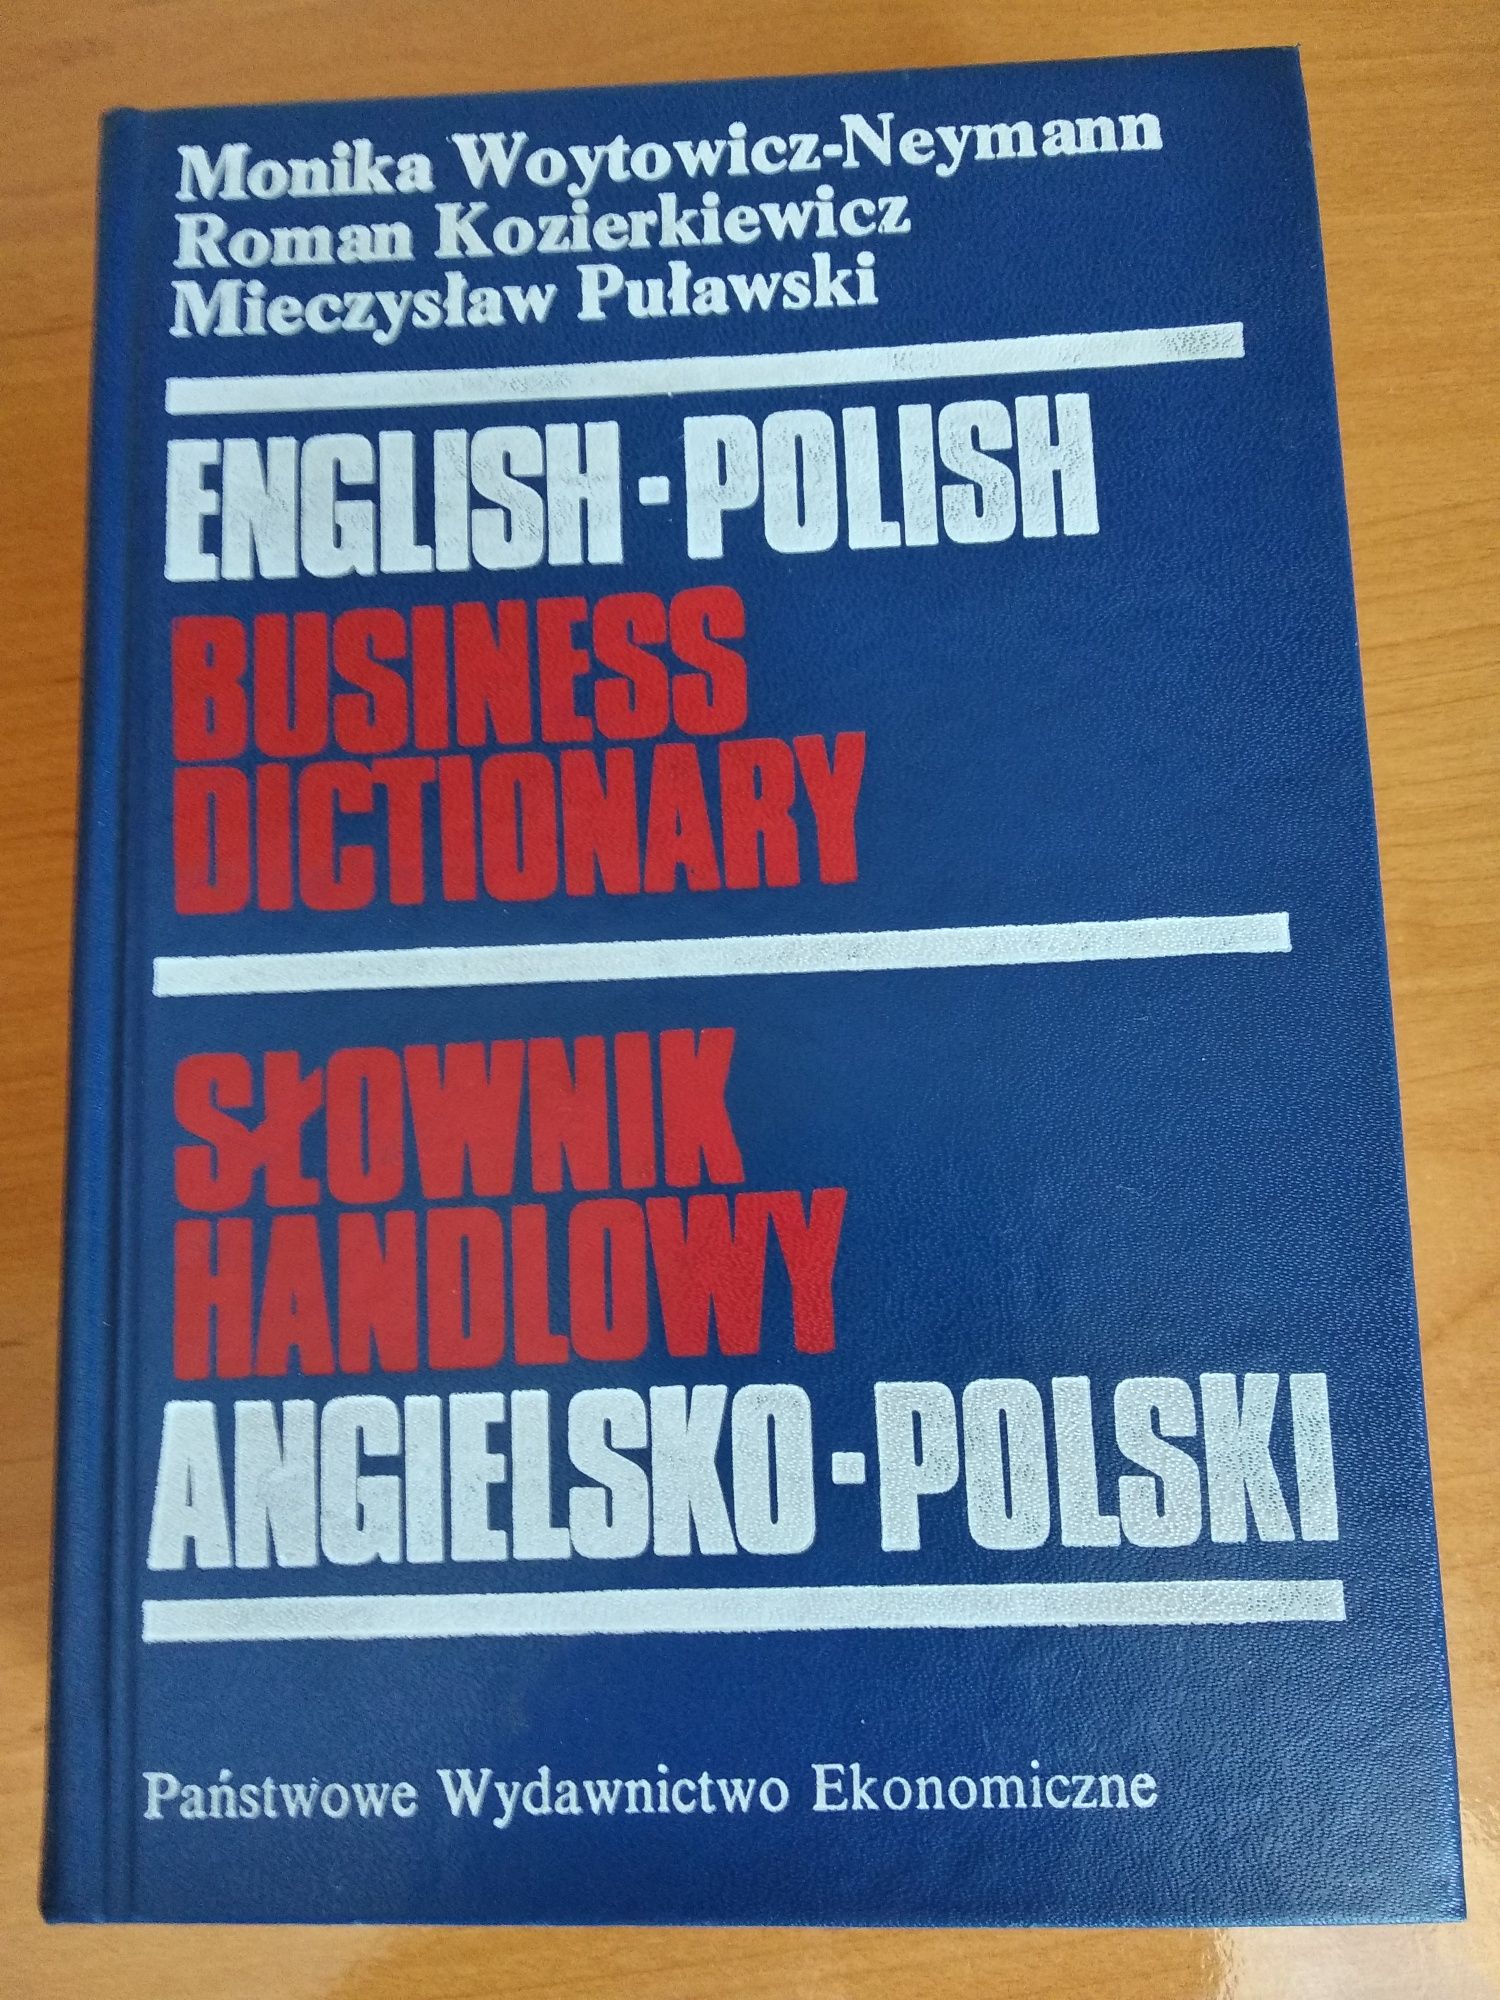 Słownik handlowy angielsko polski